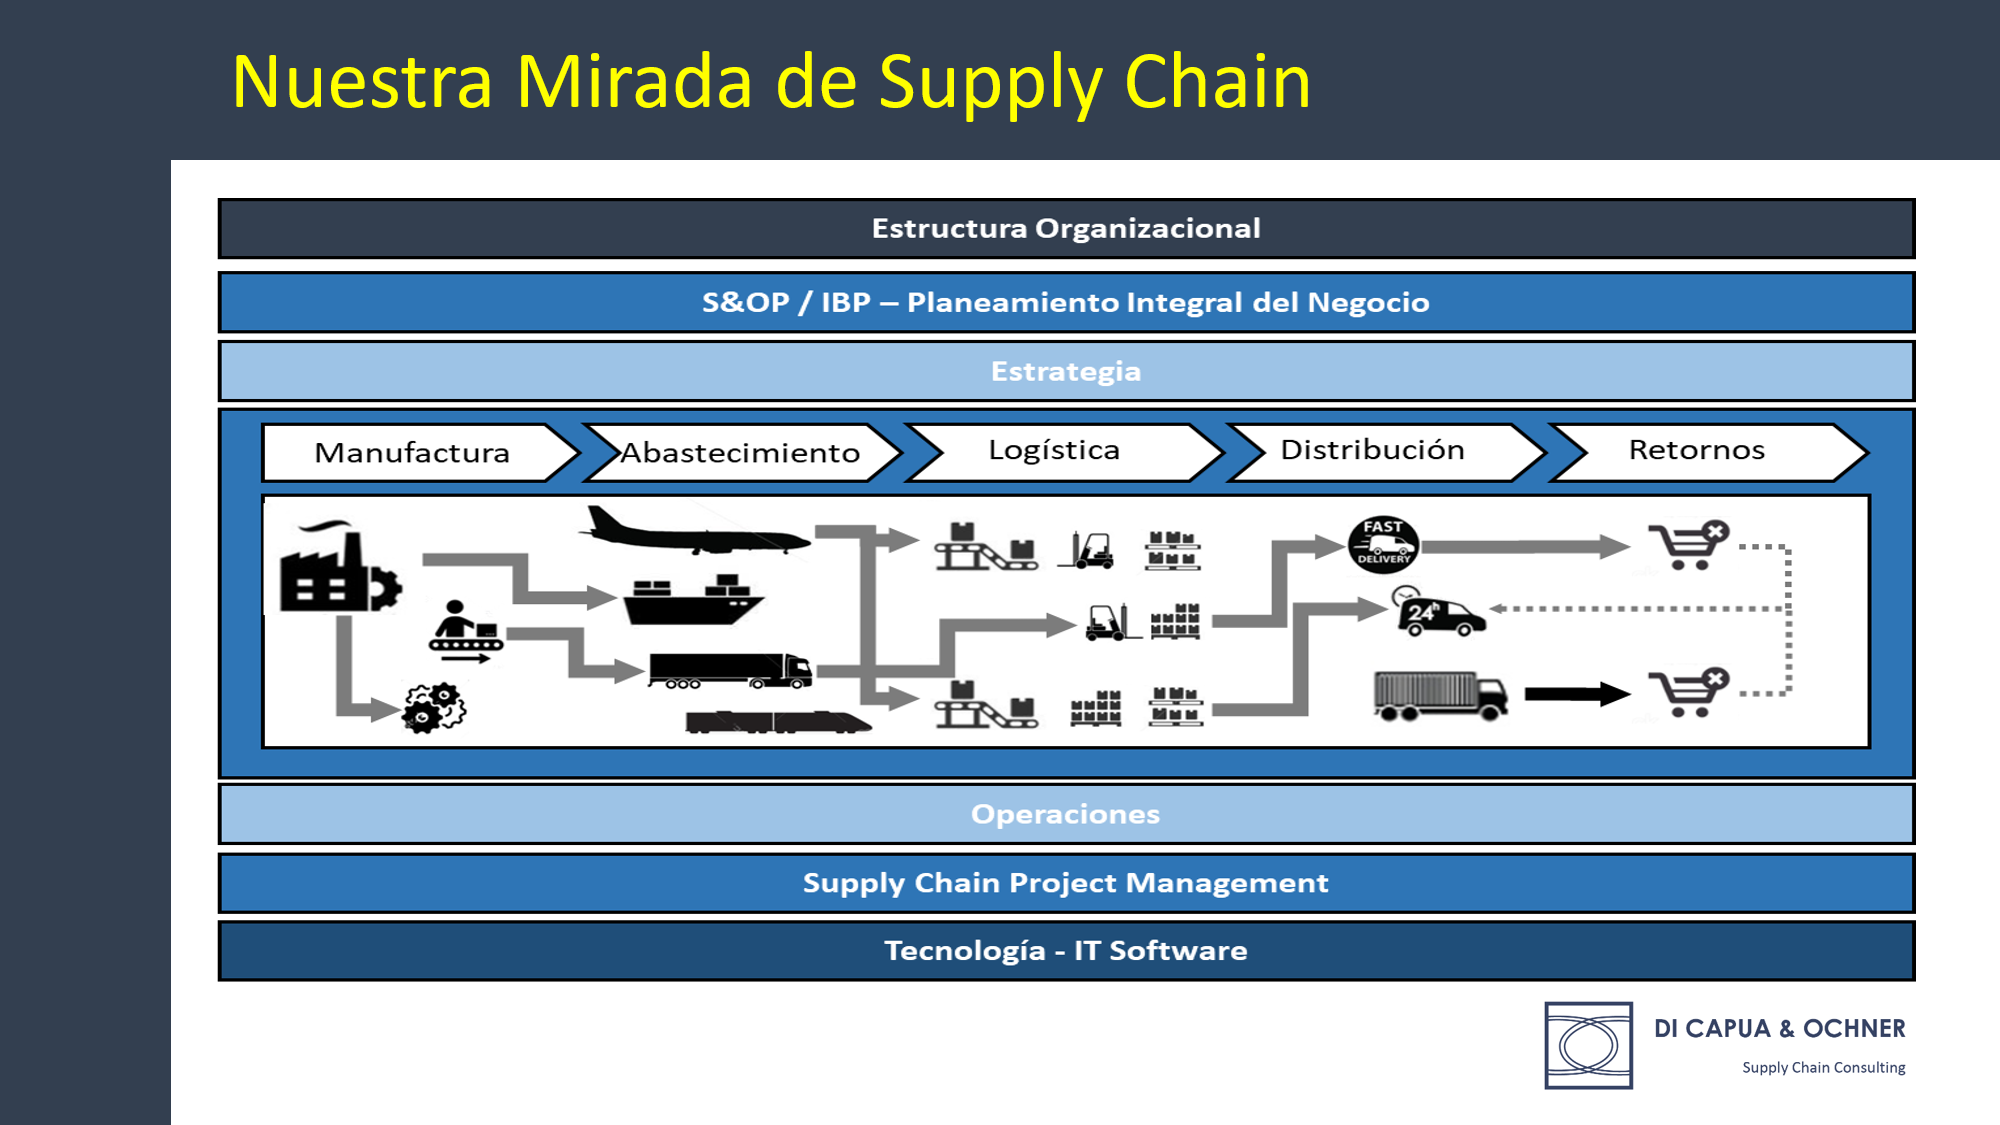 Di Capua & Ochner - Supply Chain Consulting